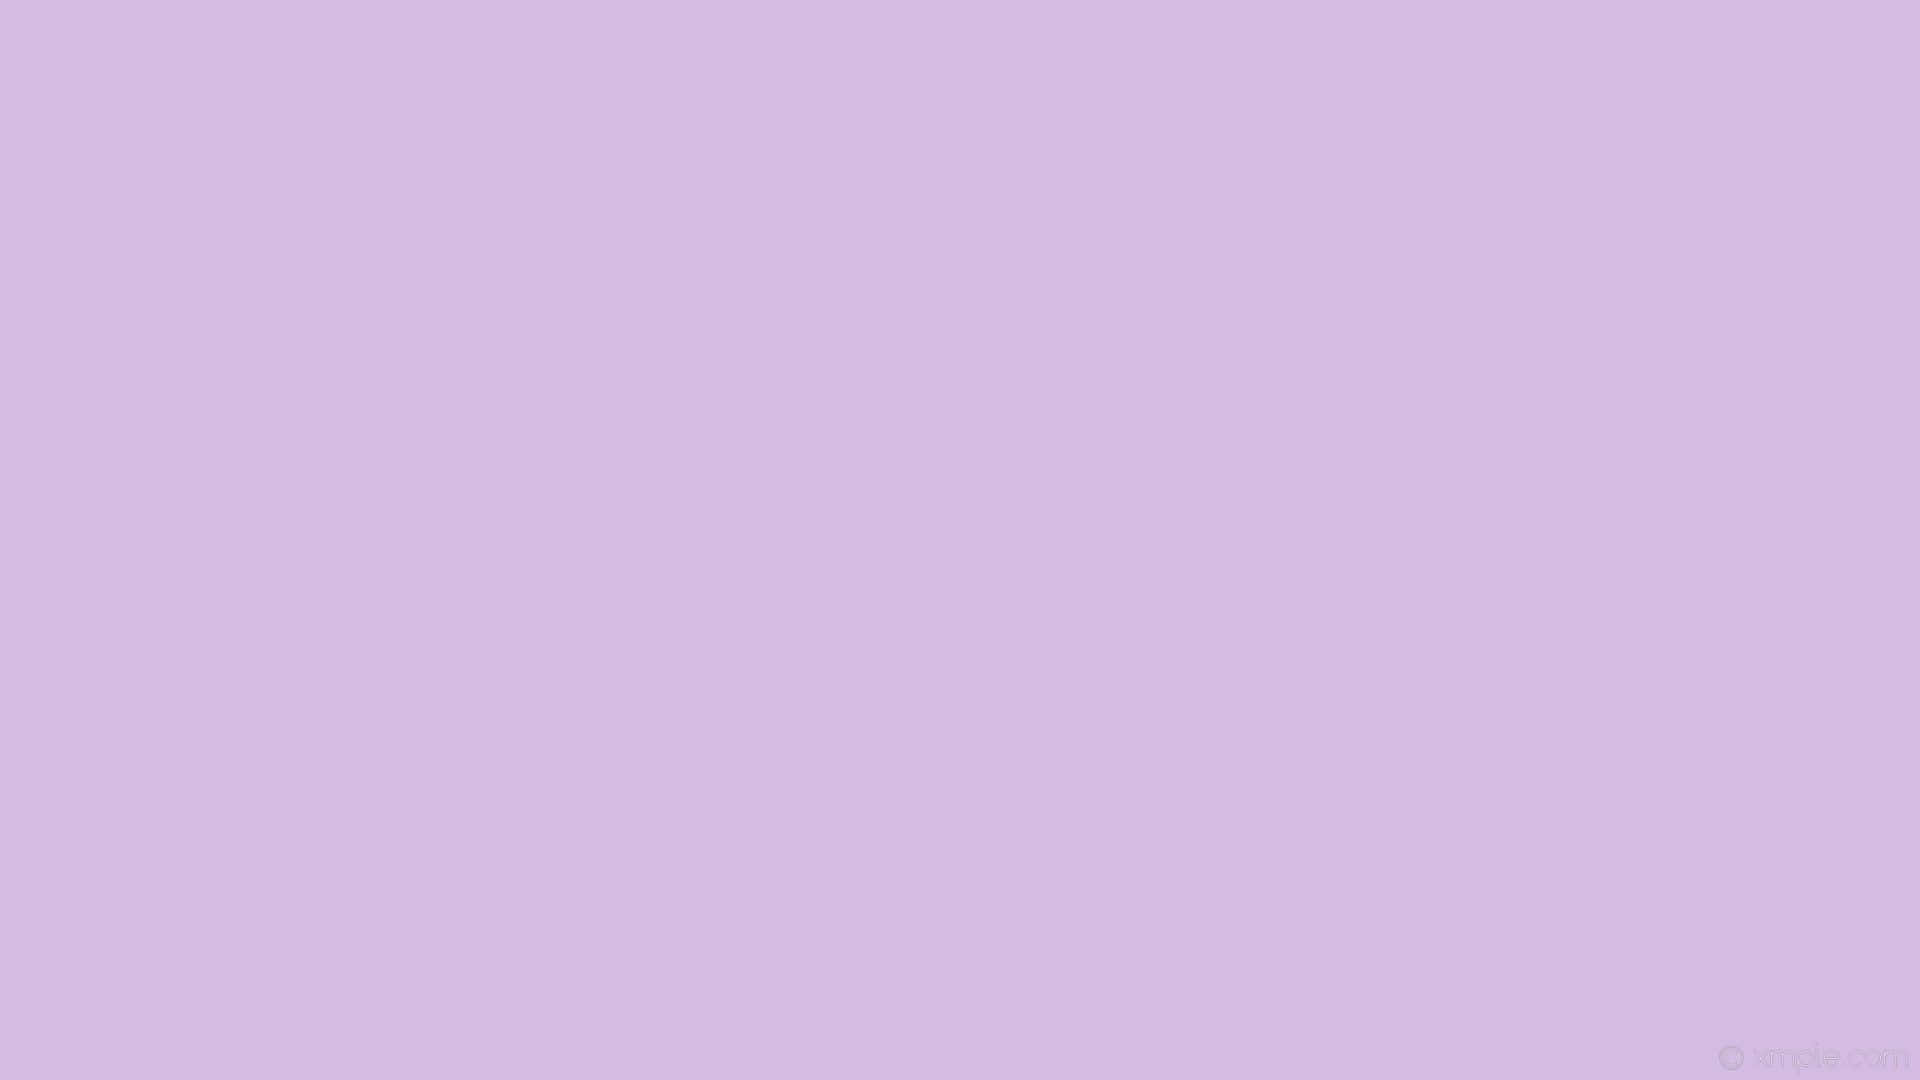 Einwunderschöner Hintergrund In Lavendelflieder.